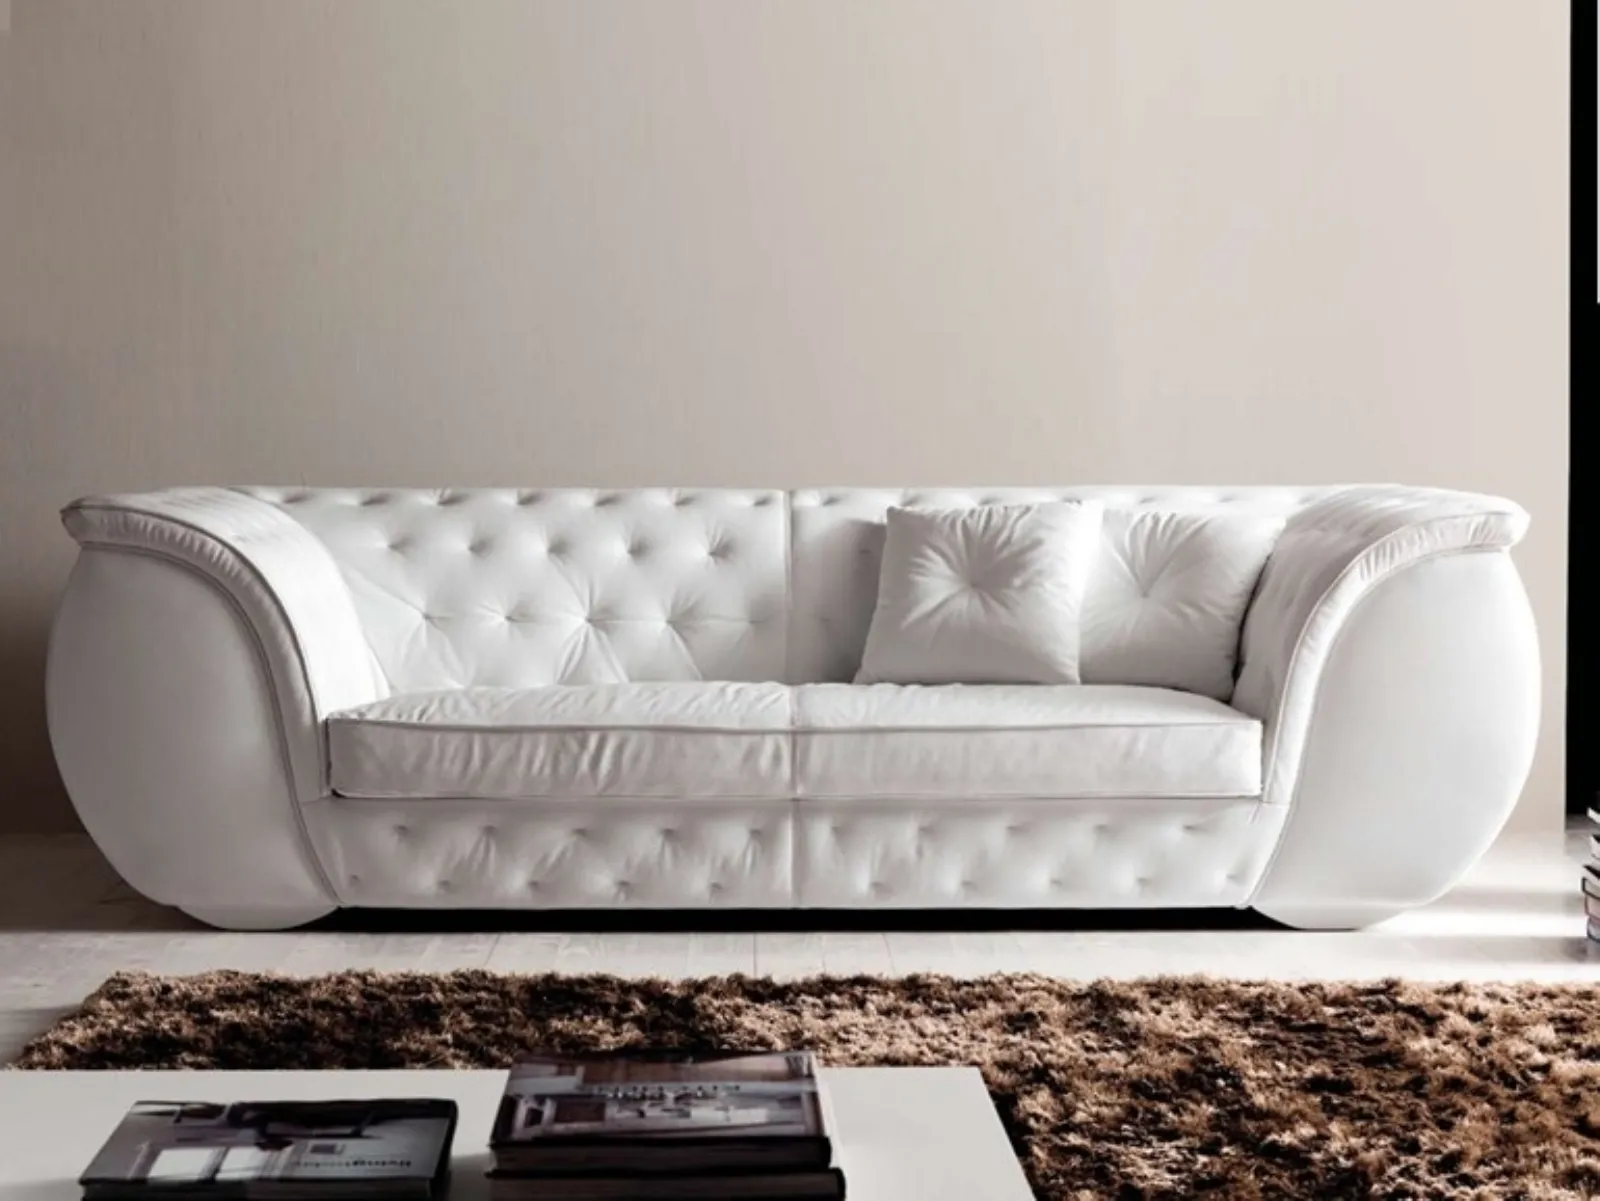 Consigli pratici per pulire il divano in pelle bianca